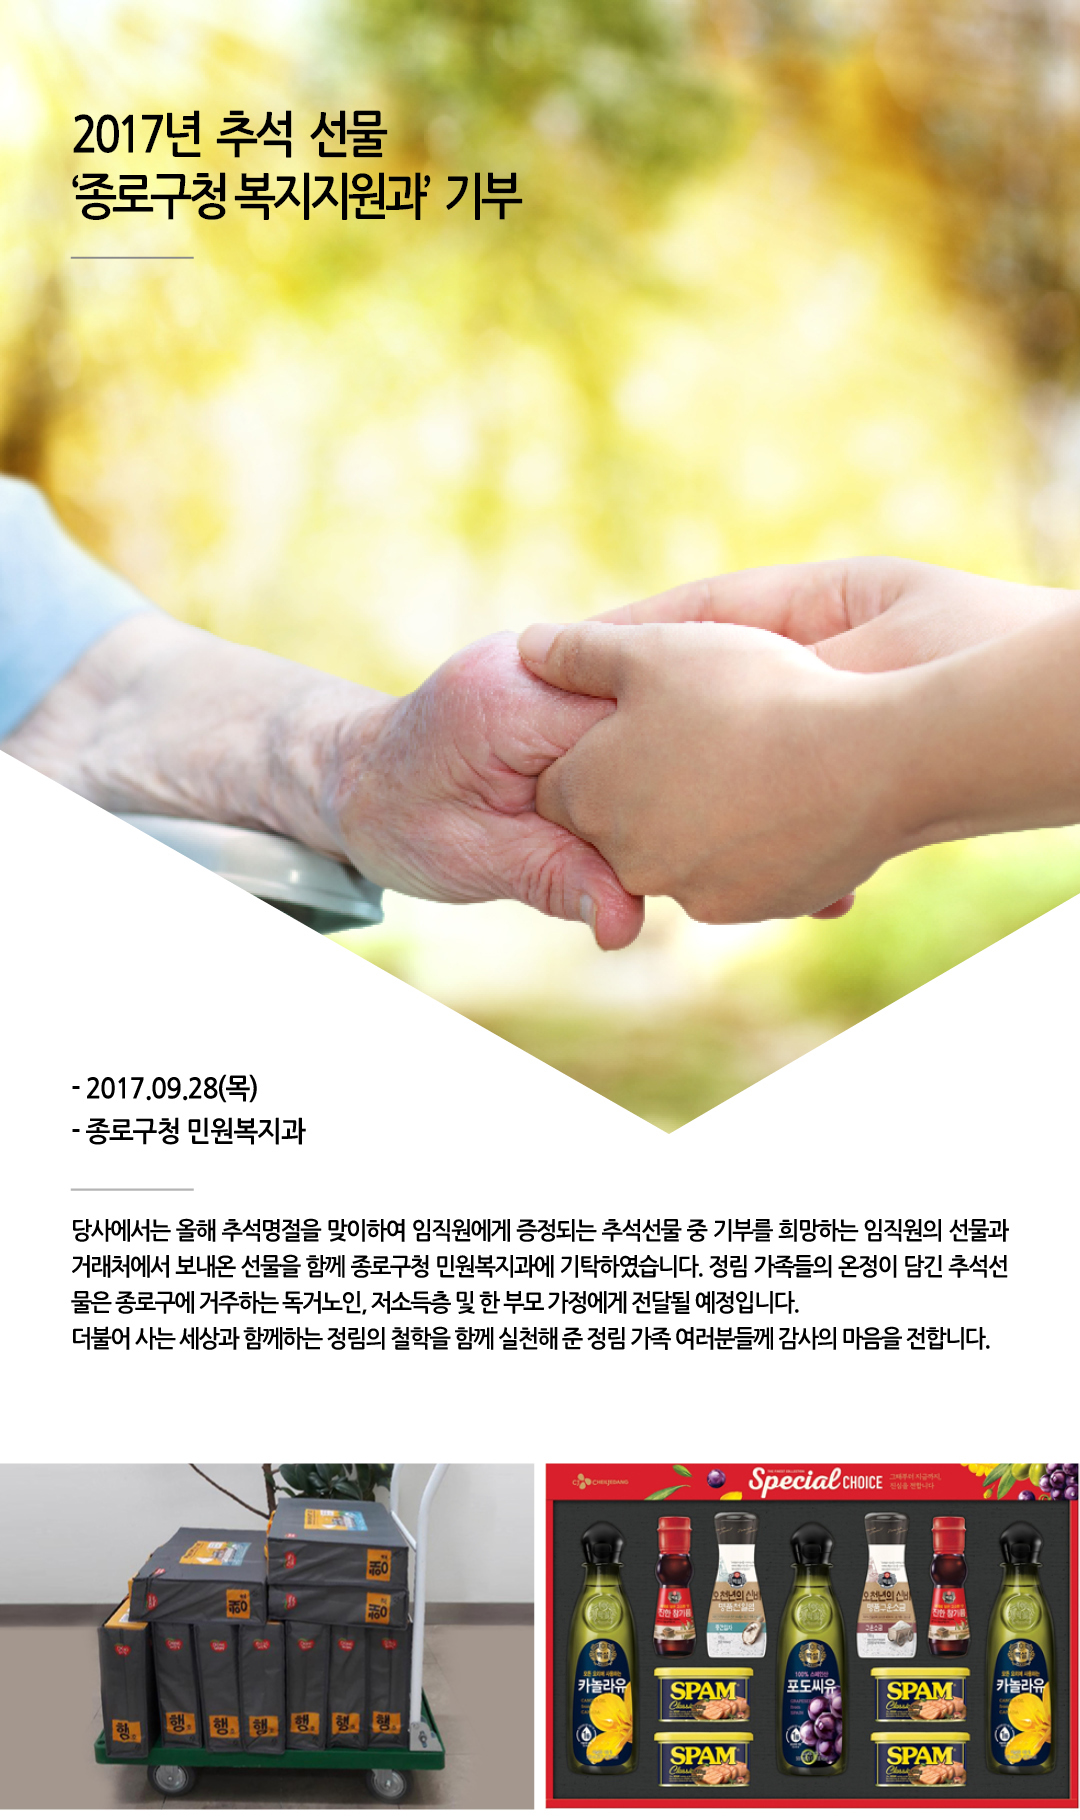 2017년 추석 선물 ‘종로구청 복지지원과’  기부1